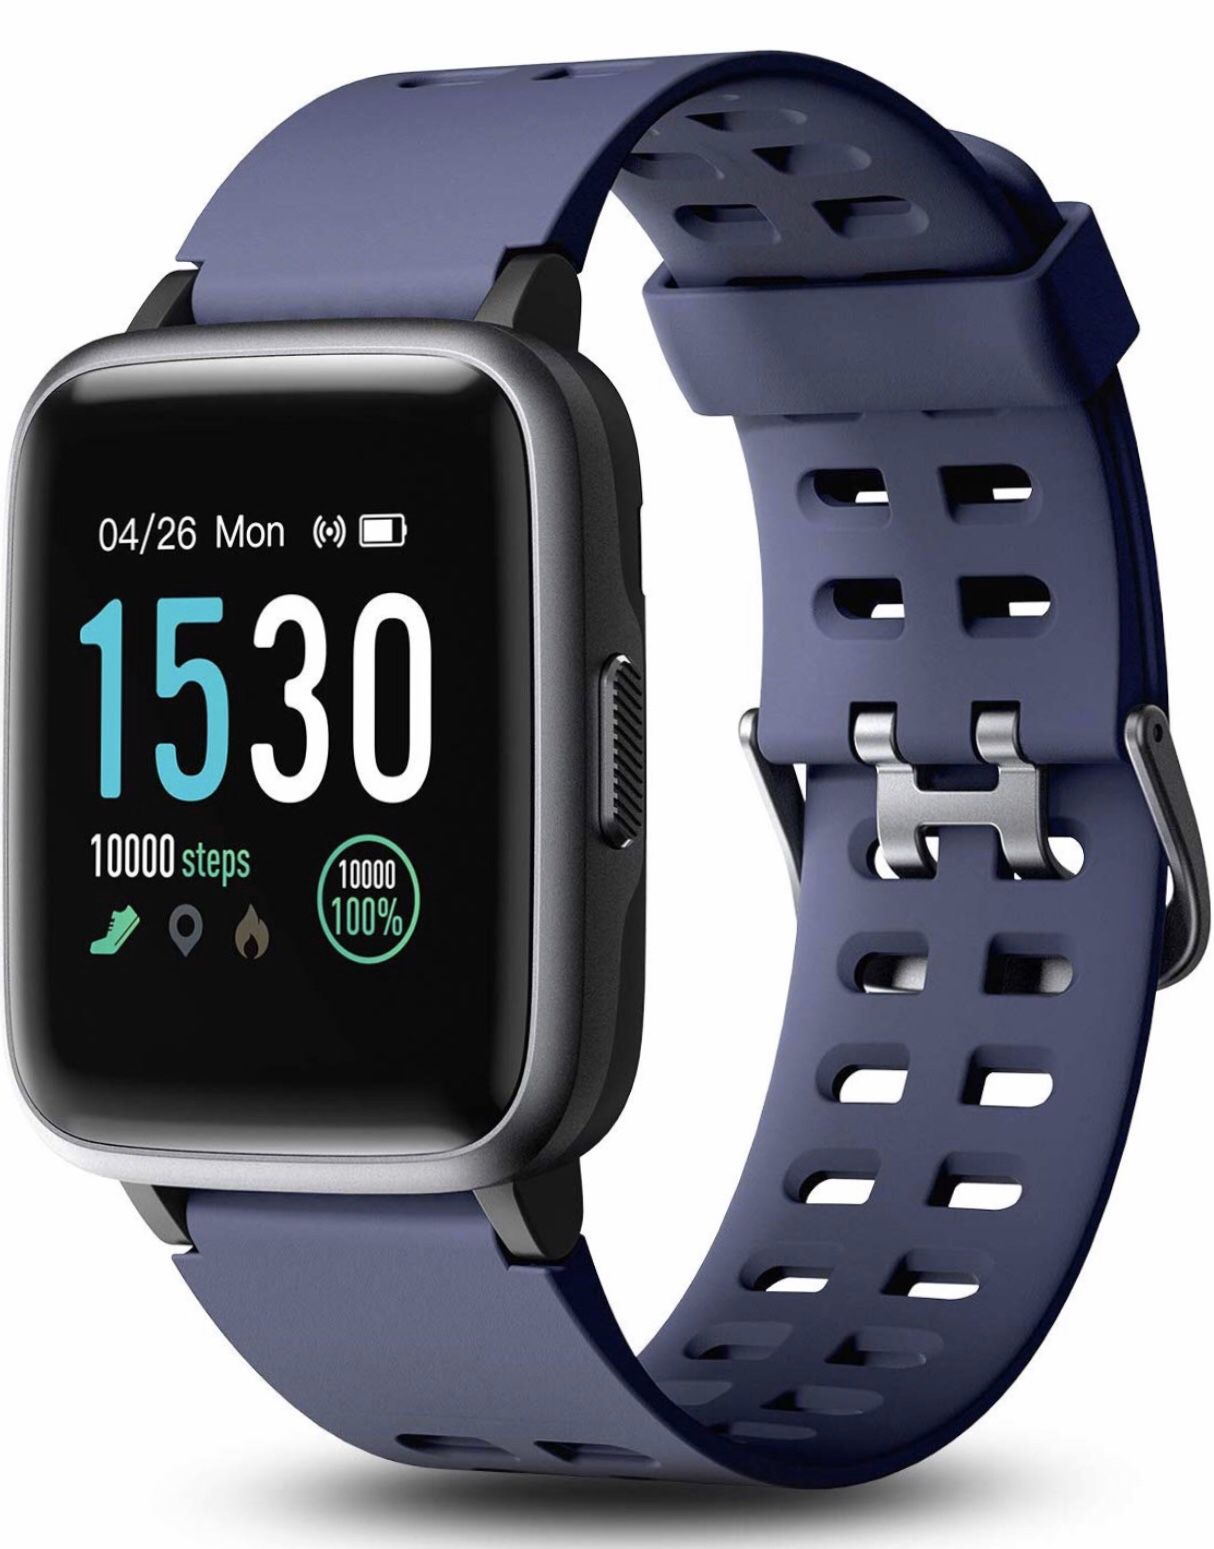 Touchscreen smart watch fitness tracker